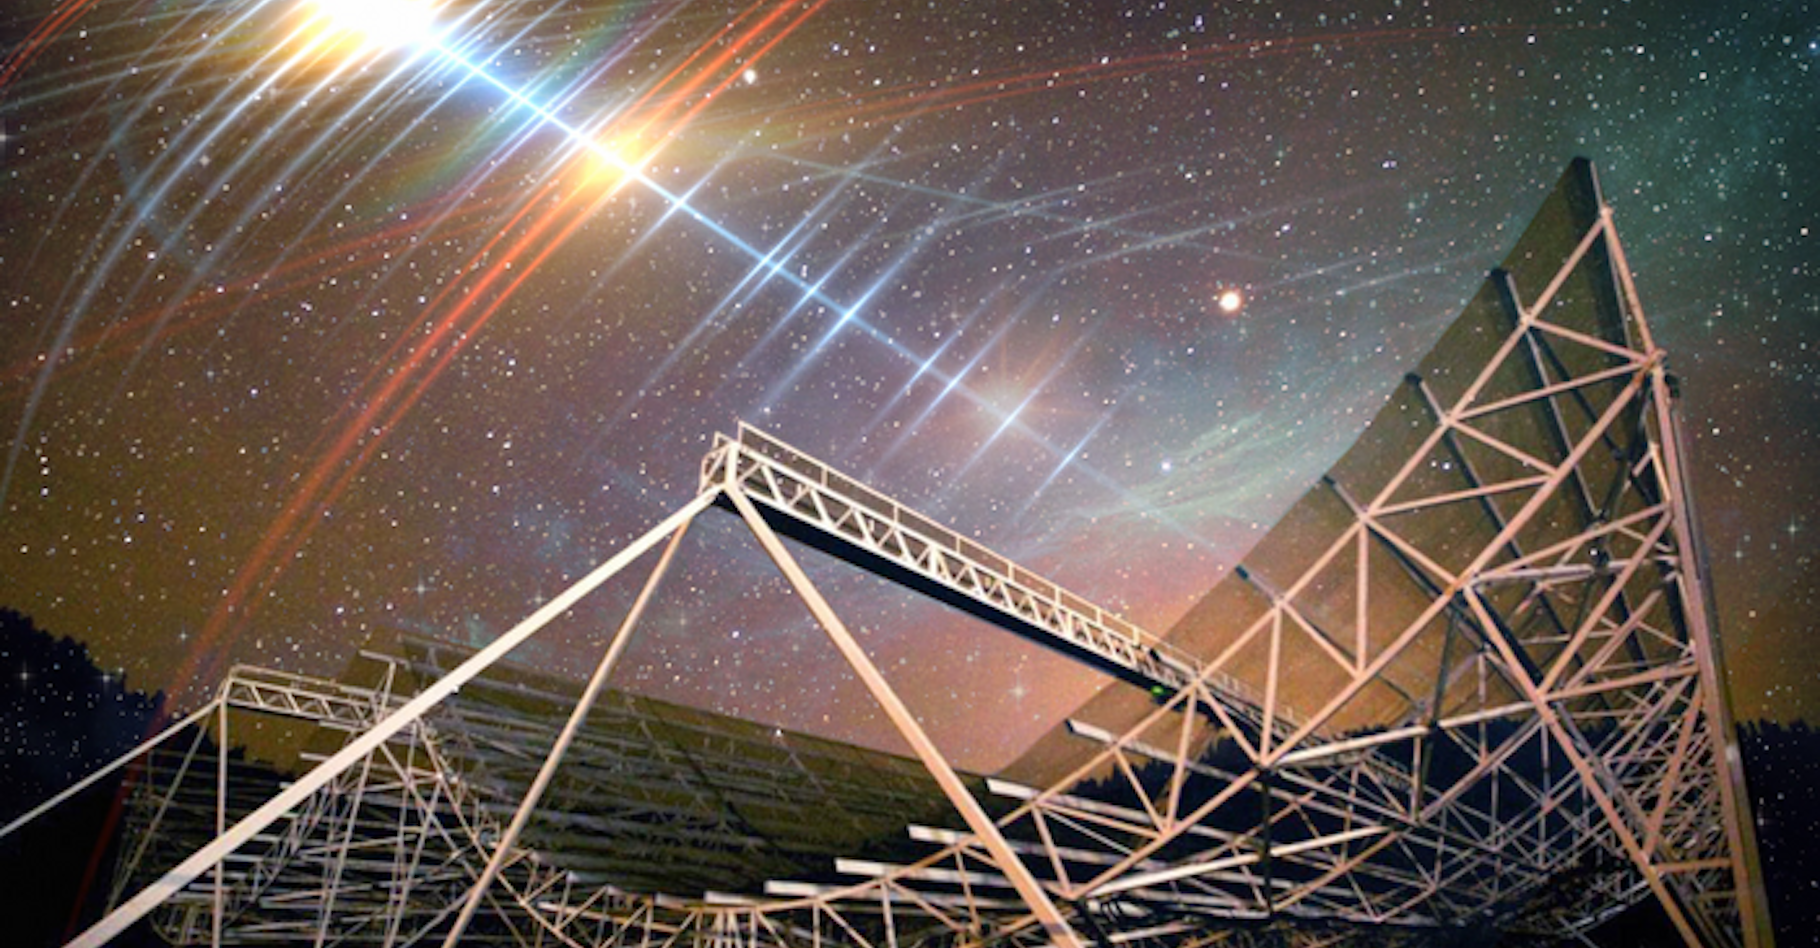 Les astronomes ont détecté — grâce au grand radiotélescope Chime (Canadian Hydrogen Intensity Mapping Experiment) ici en illustration — un sursaut radio rapide (FRB) provenant d’une galaxie lointaine et d’une régularité surprenante. Nommé FRB 20191221A, ce sursaut radio rapide, ou FRB, est actuellement&nbsp;le plus durable, avec le schéma périodique le plus clair, détecté à ce jour. © CHIME, MIT